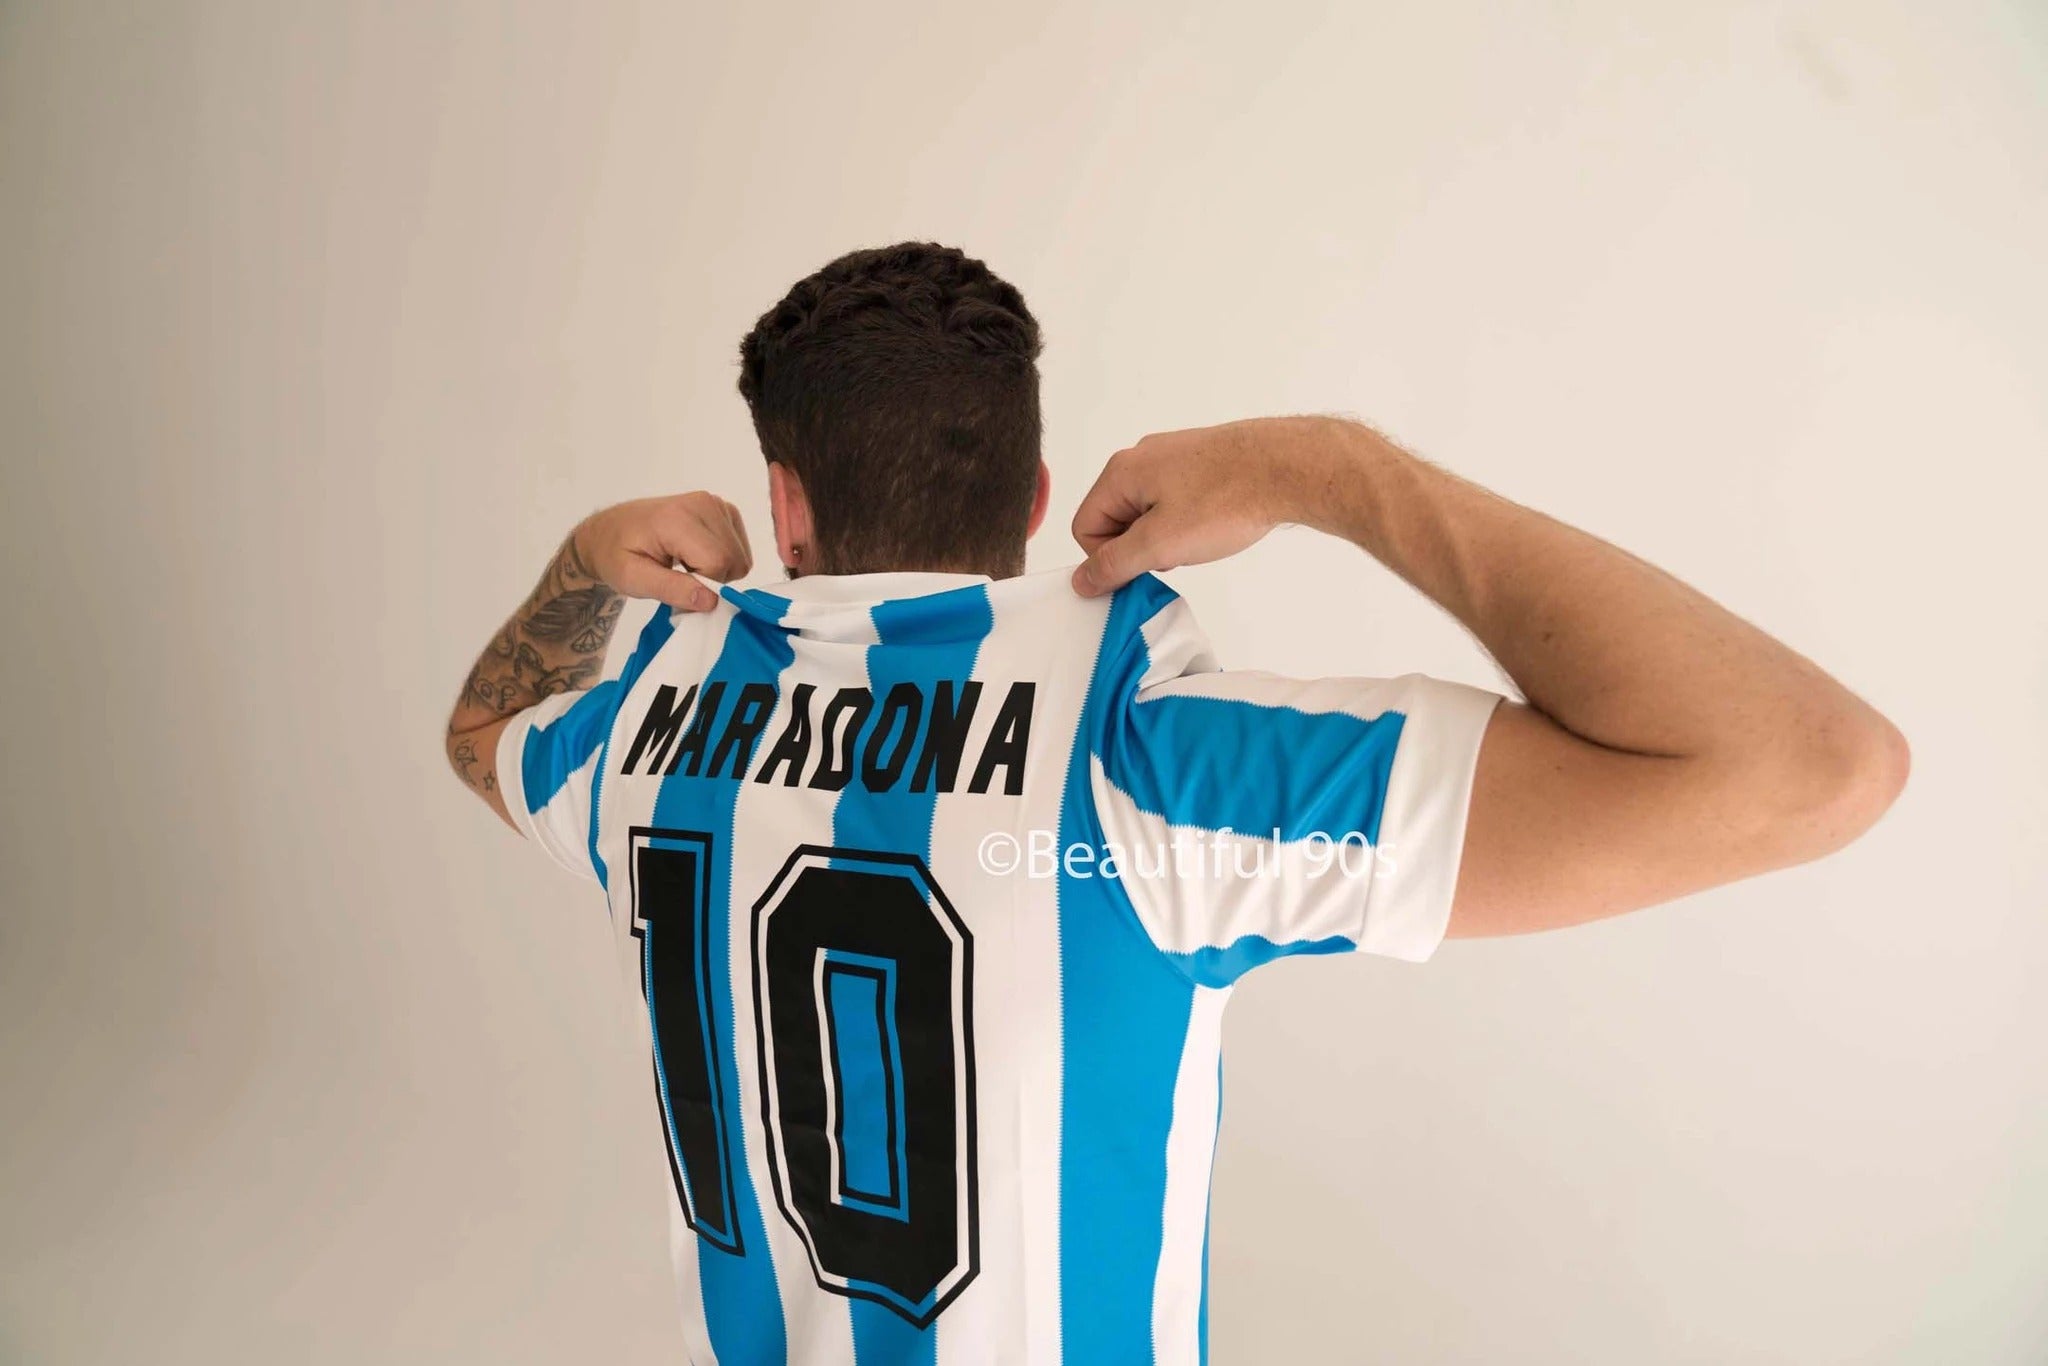 argentina 1986 replica shirt